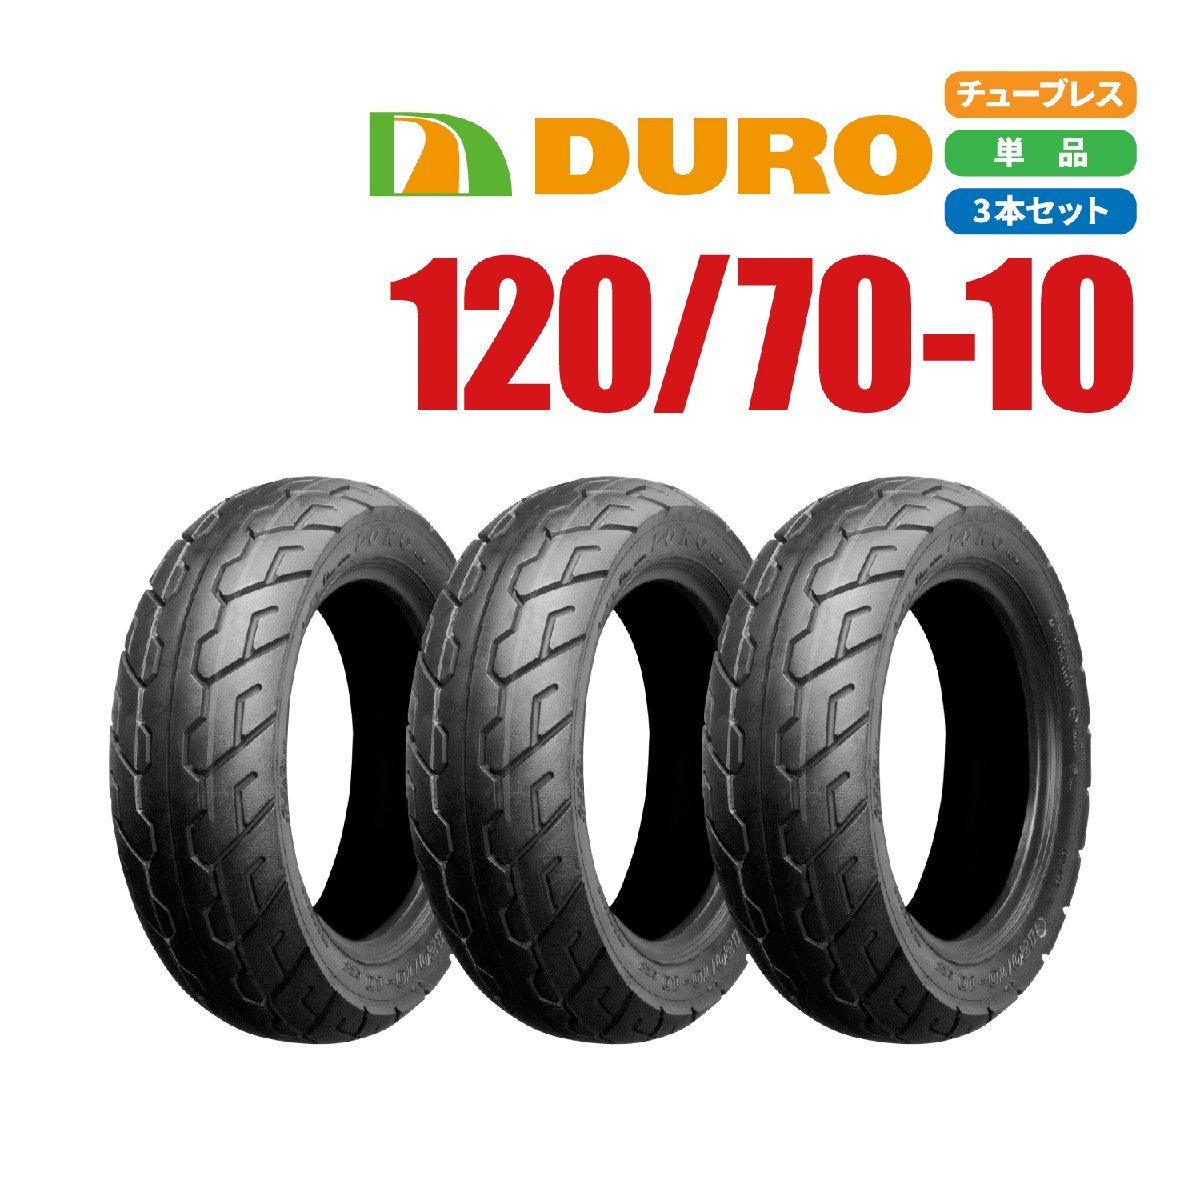 バイクパーツセンター 新品 DURO スクーター タイヤ 120/70-10 54J HF-900 T/L 3本 セット モンキー アドレスV125_画像1